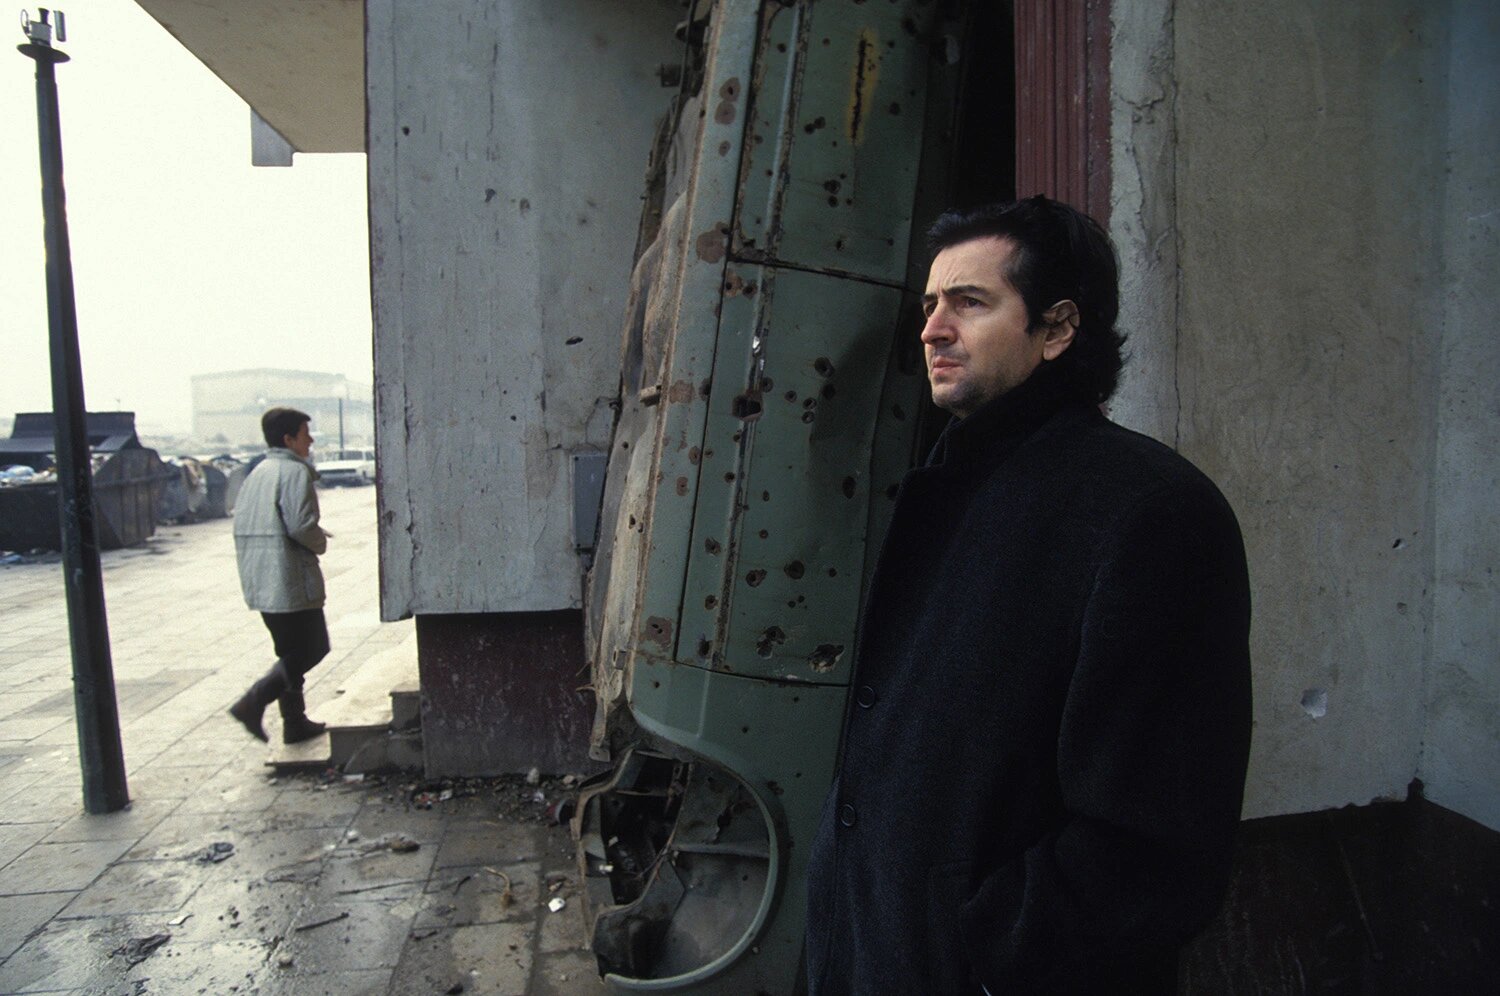 Lévy in Sarajevo, Bosnia and Herzegovina, on Dec. 28, 1993.